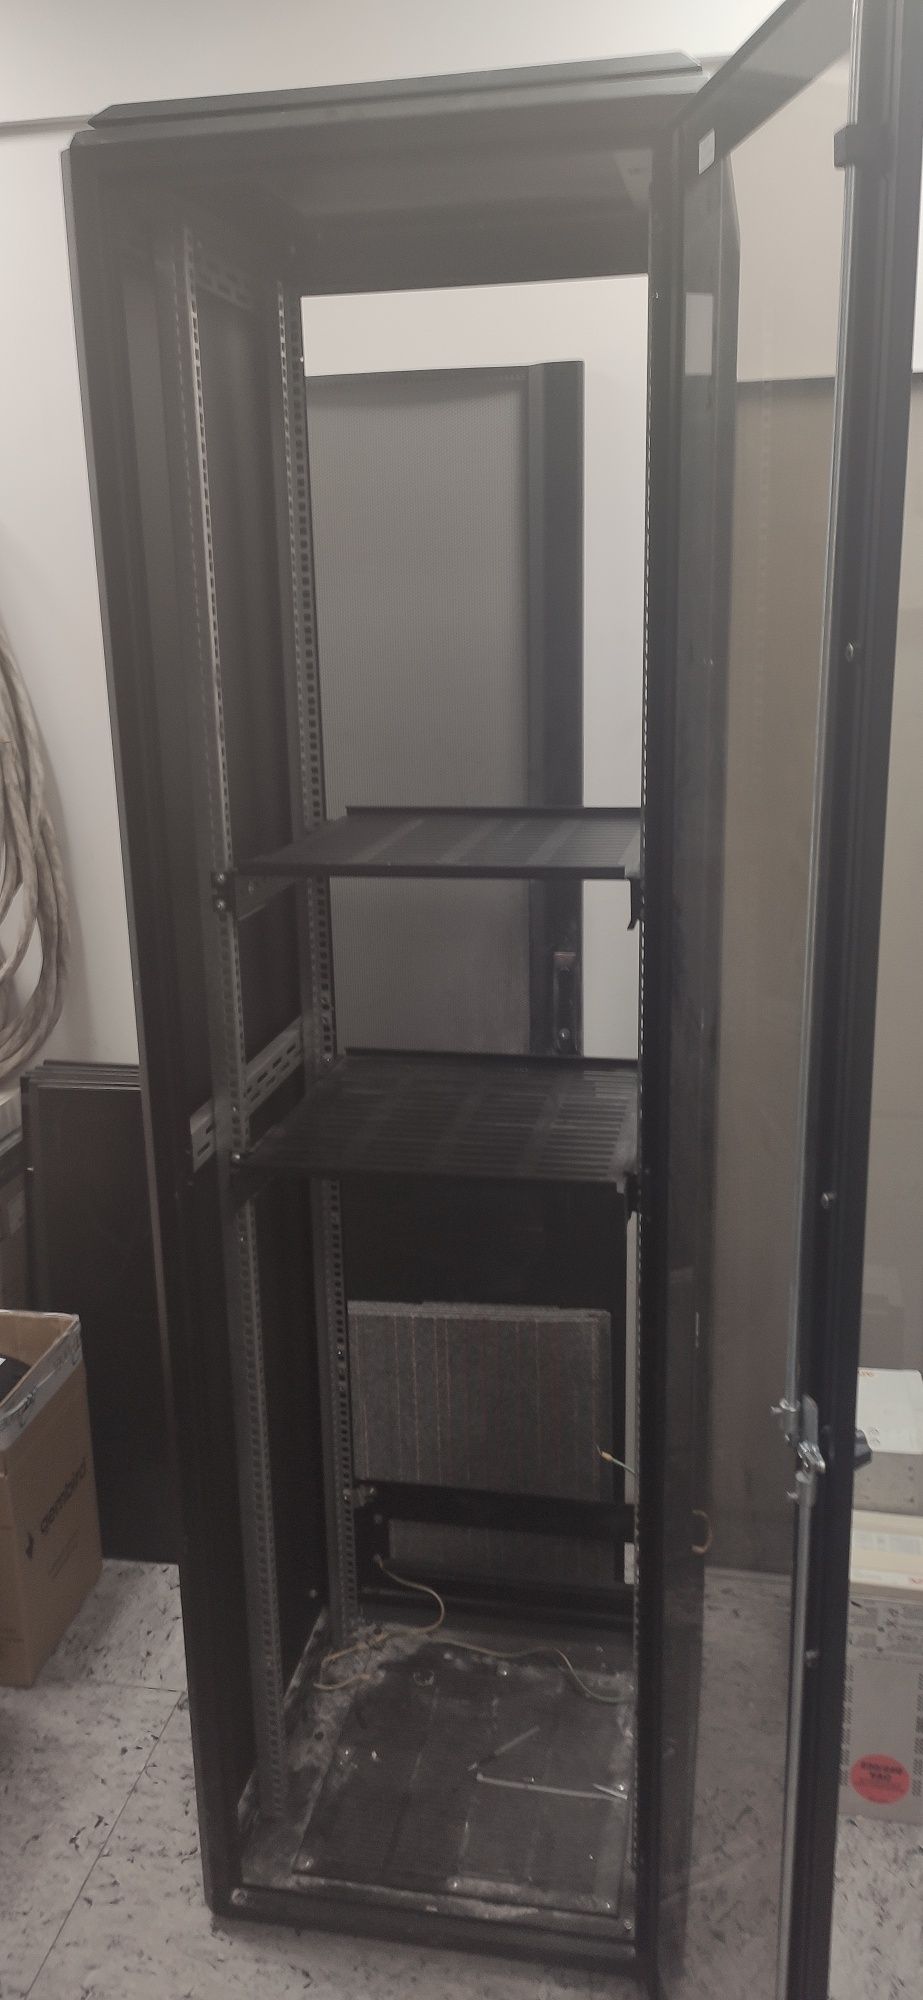 Сервернаый шкаф.Комутационная стойка 60х60х200